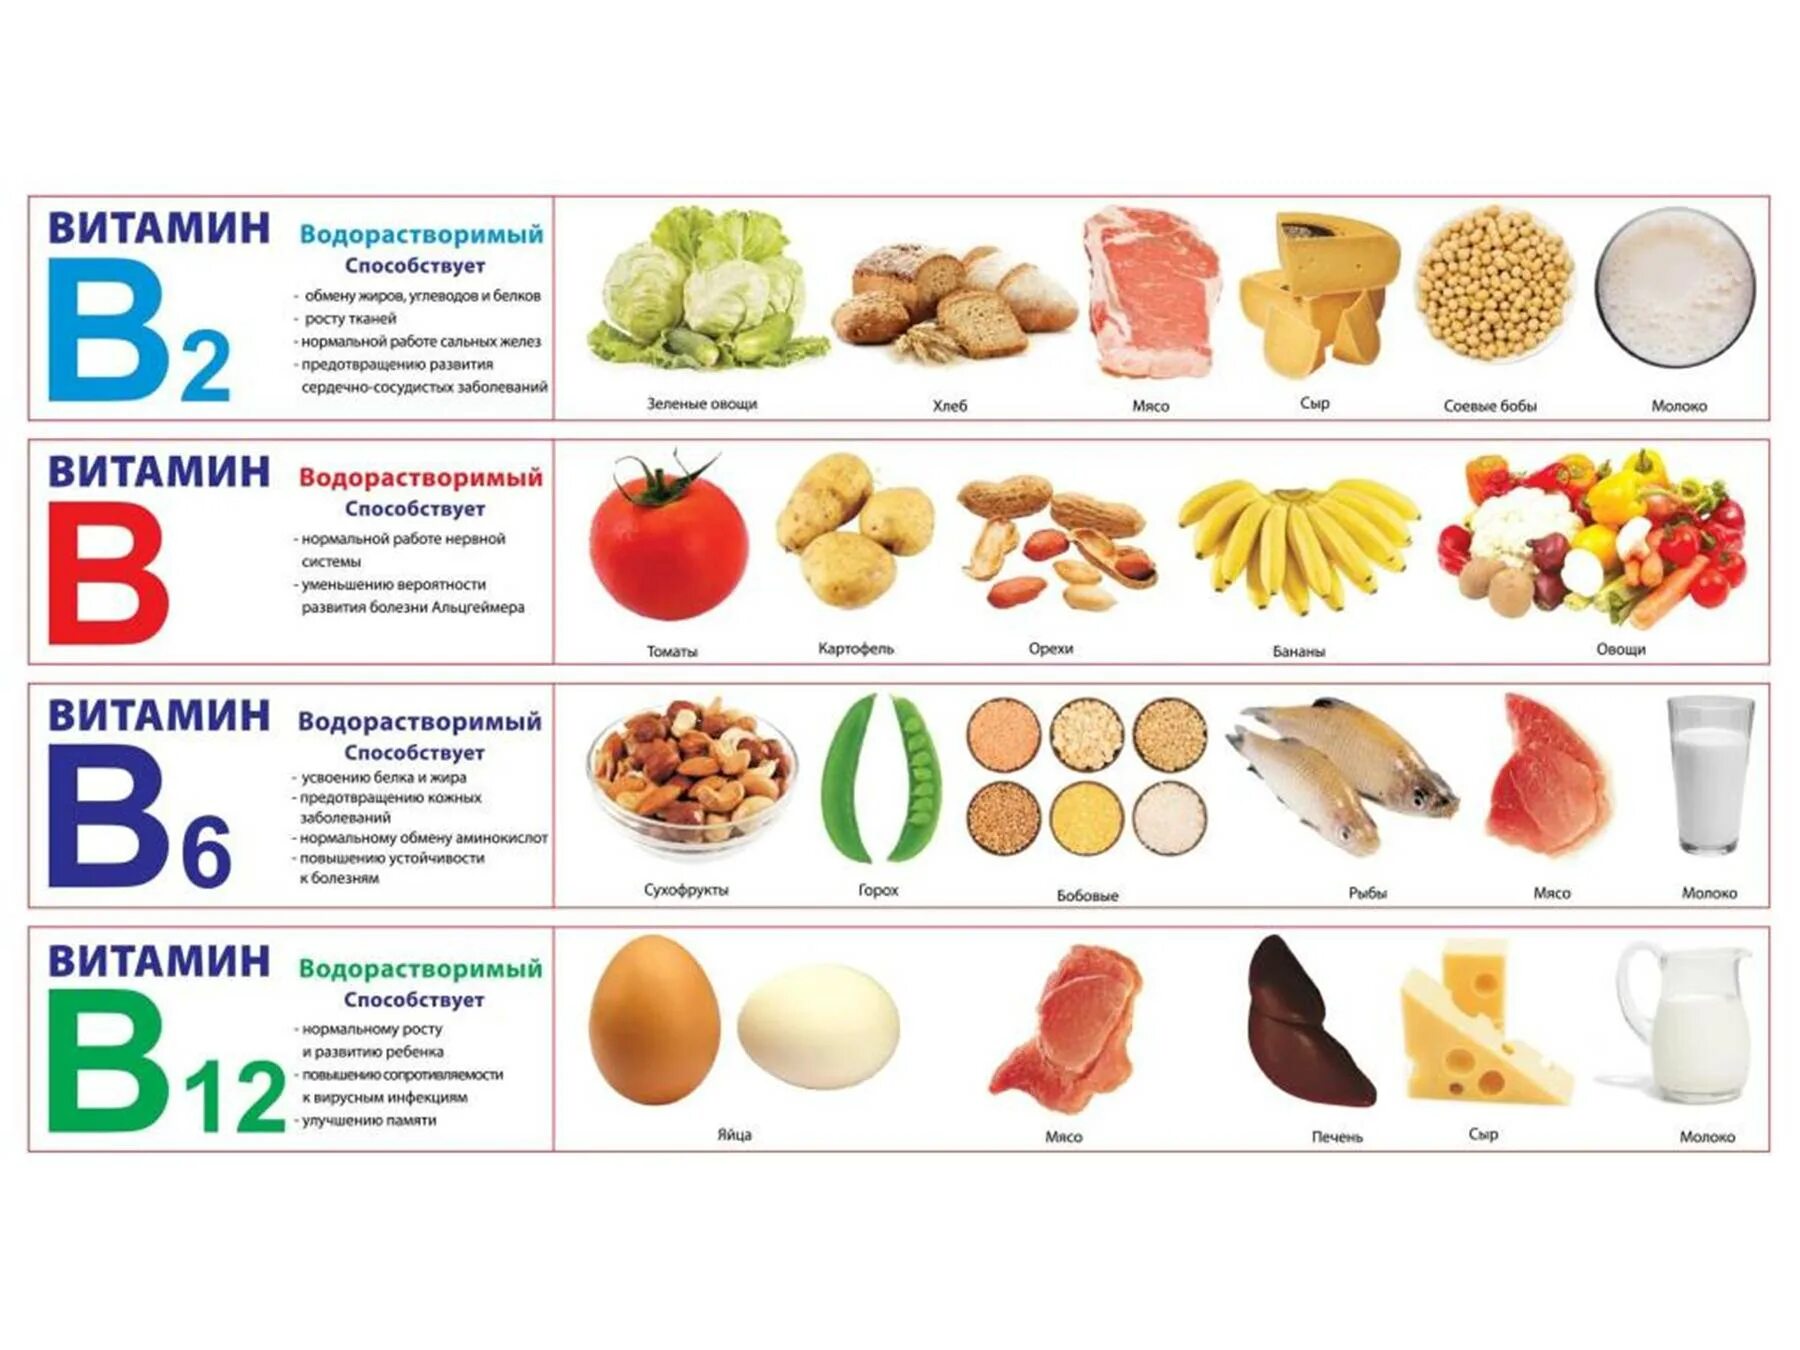 Витамины в пищевых продуктах. Здоровое питание таблица витаминов. Правильное питание витамины. Продукты здорового питания таблица. Витамины в продуктах для детей